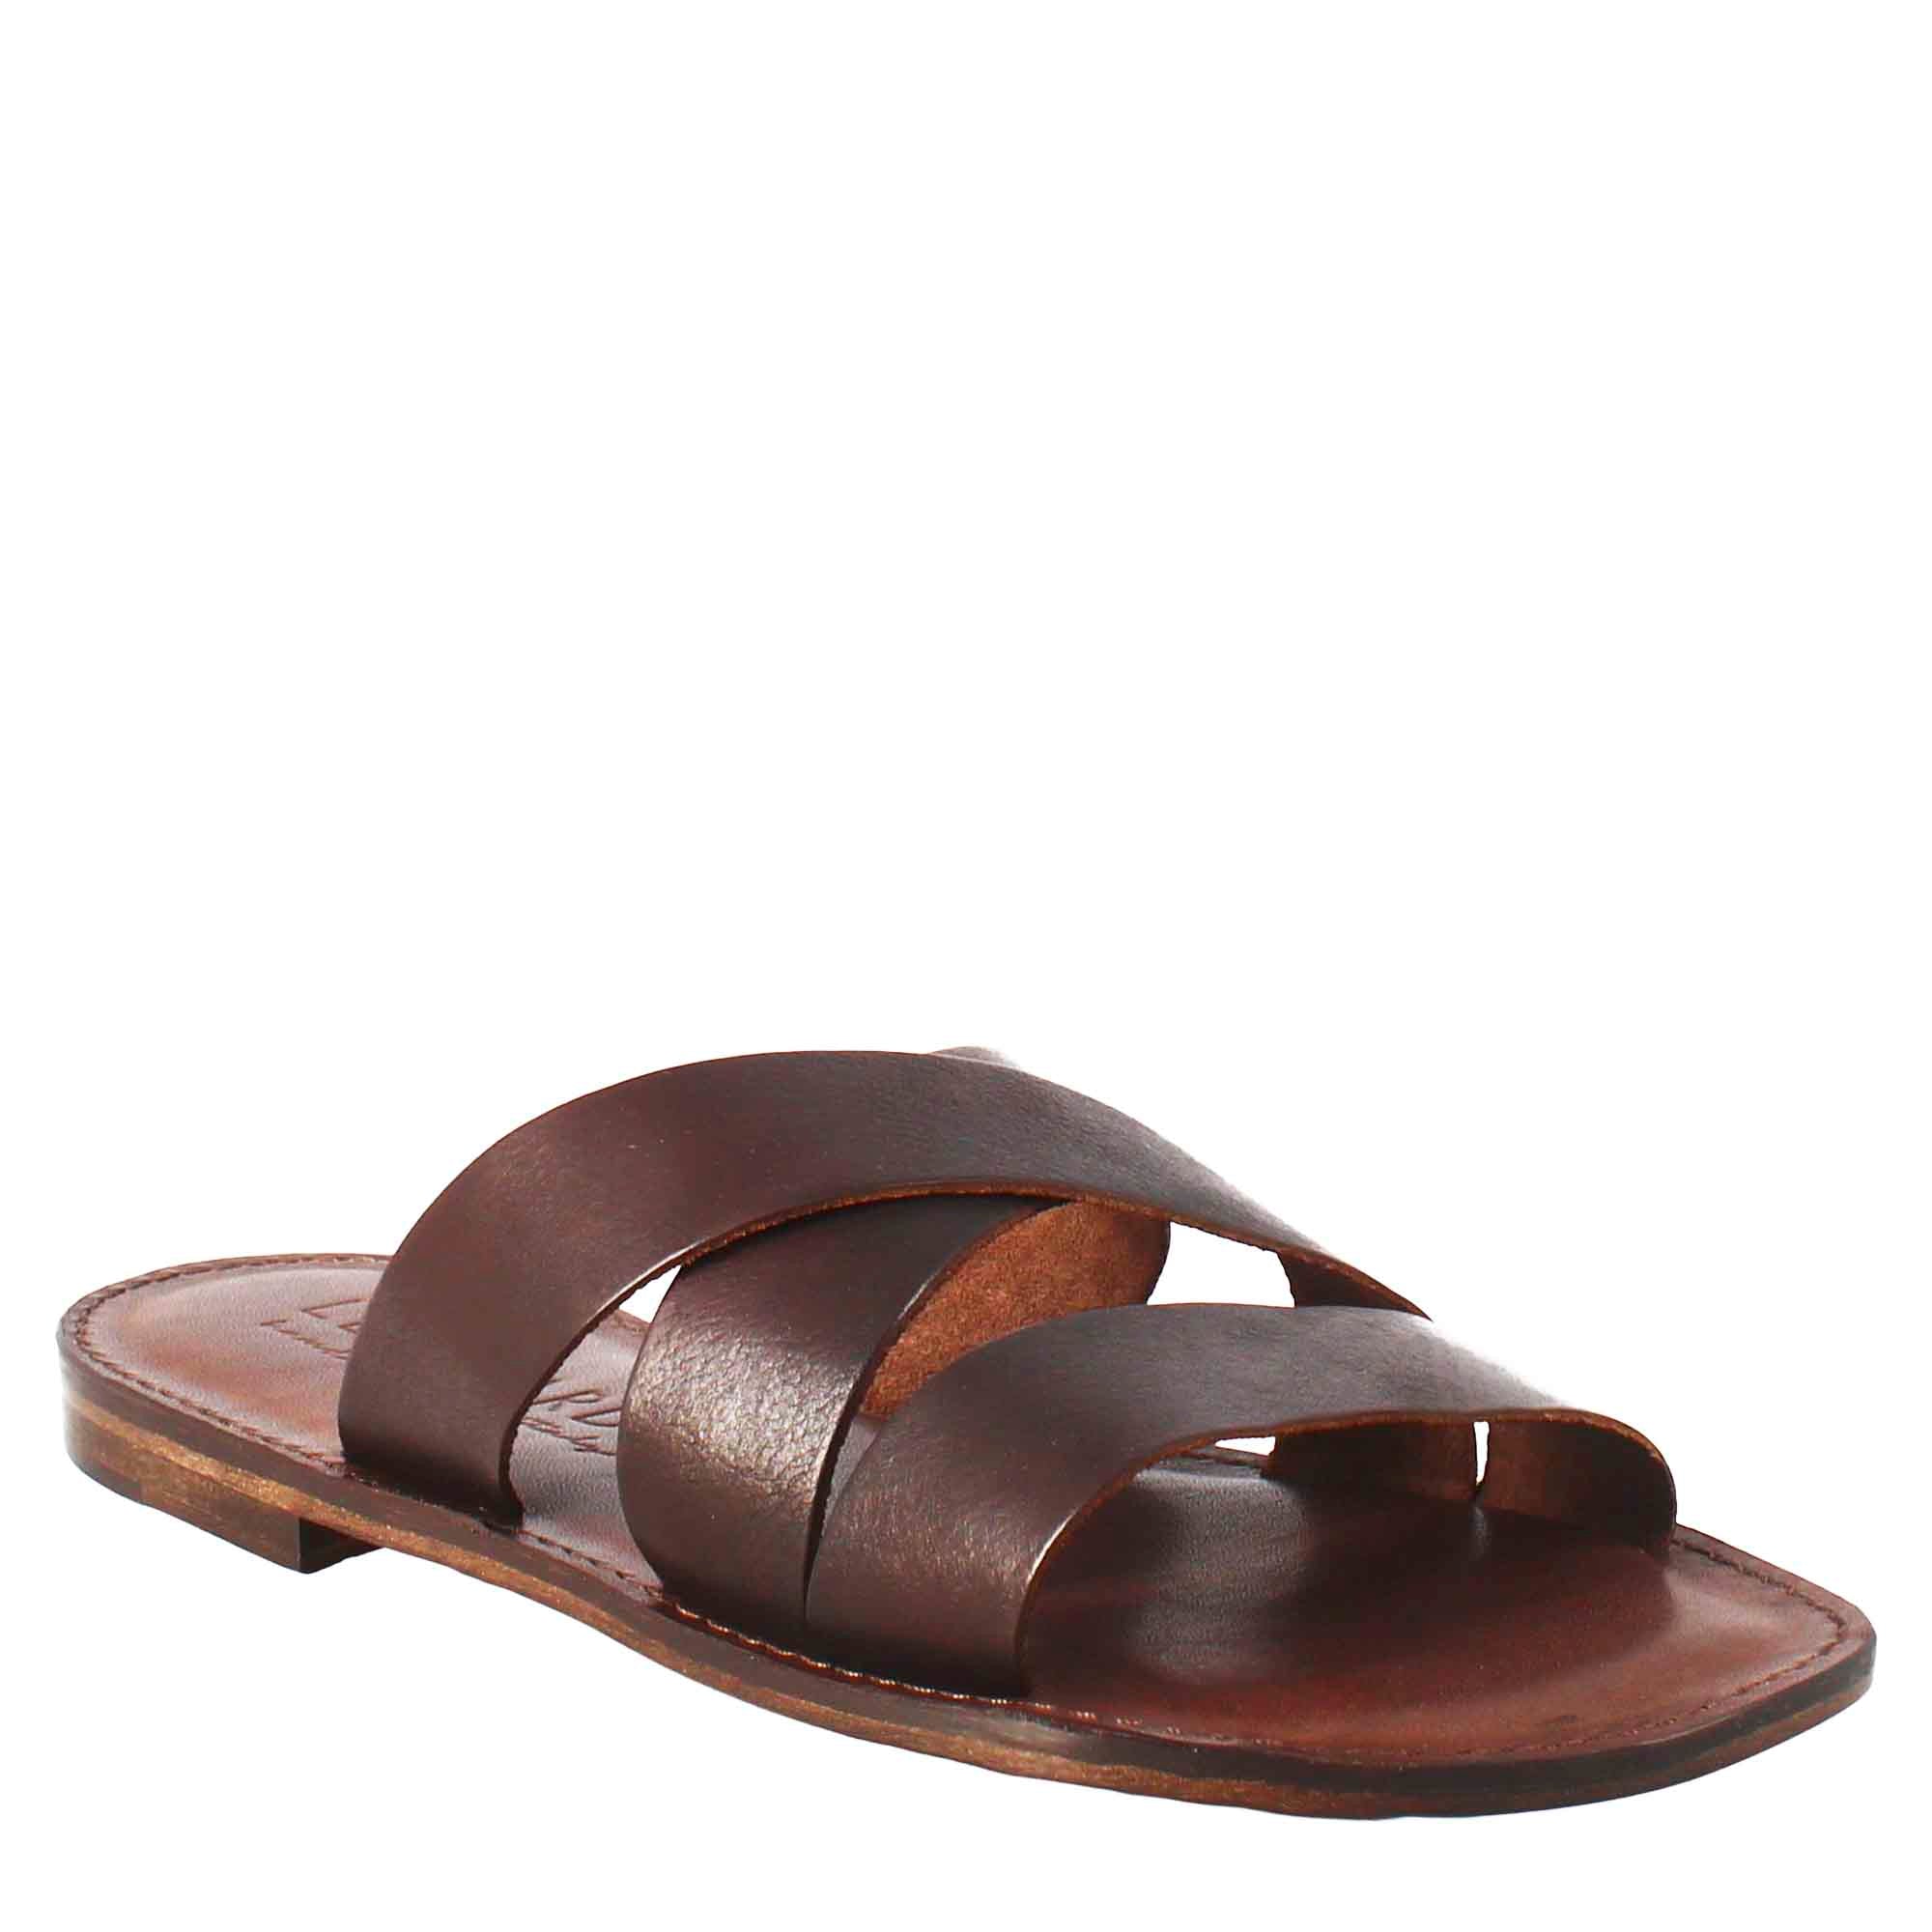 peave Afledning øve sig Brown leather gladiator sandals for men